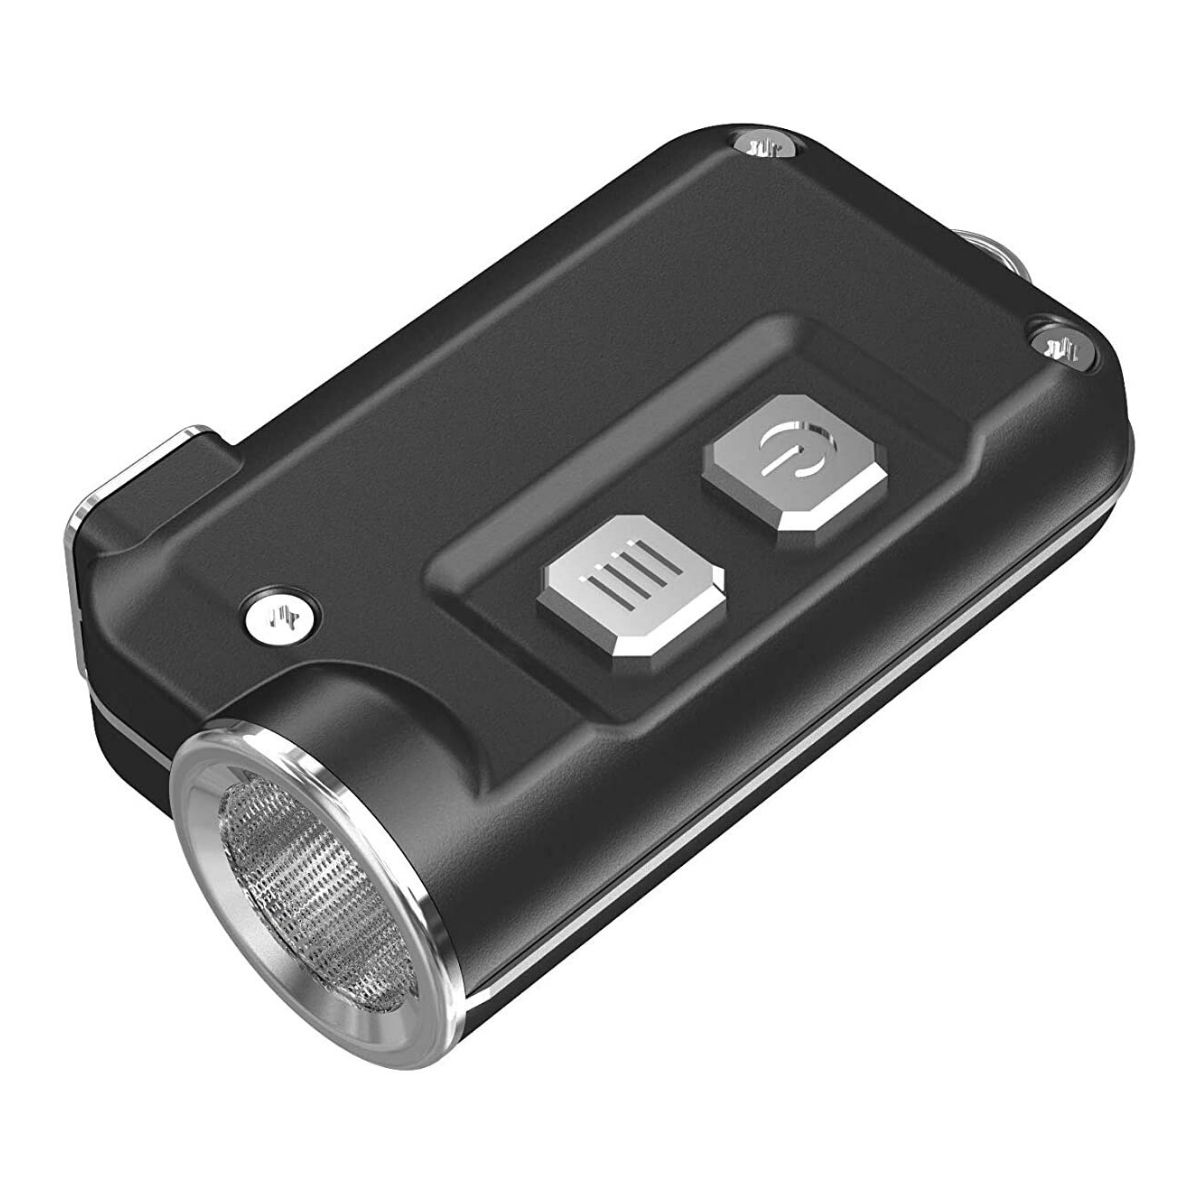 The Best Keychain Flashlight Option: NITECORE TINI 380 Lm USB Rechargeable LED Flashlight